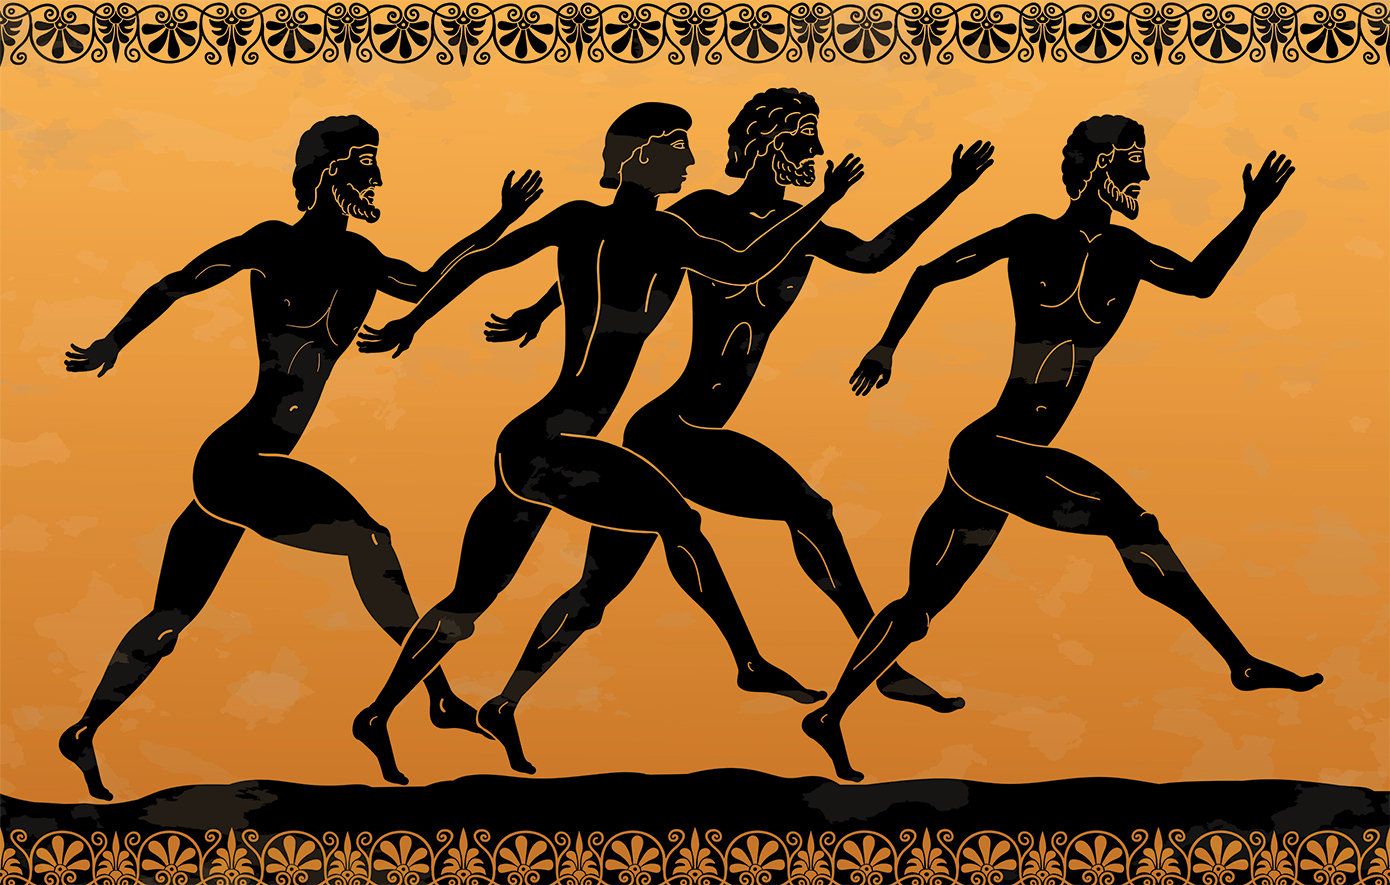 Πώς διεξάγονταν οι αρχαίοι Ολυμπιακοί Αγώνες – Η μετακίνηση των αθλητών, οι χορηγοί και τα έπαθλα στους νικητές